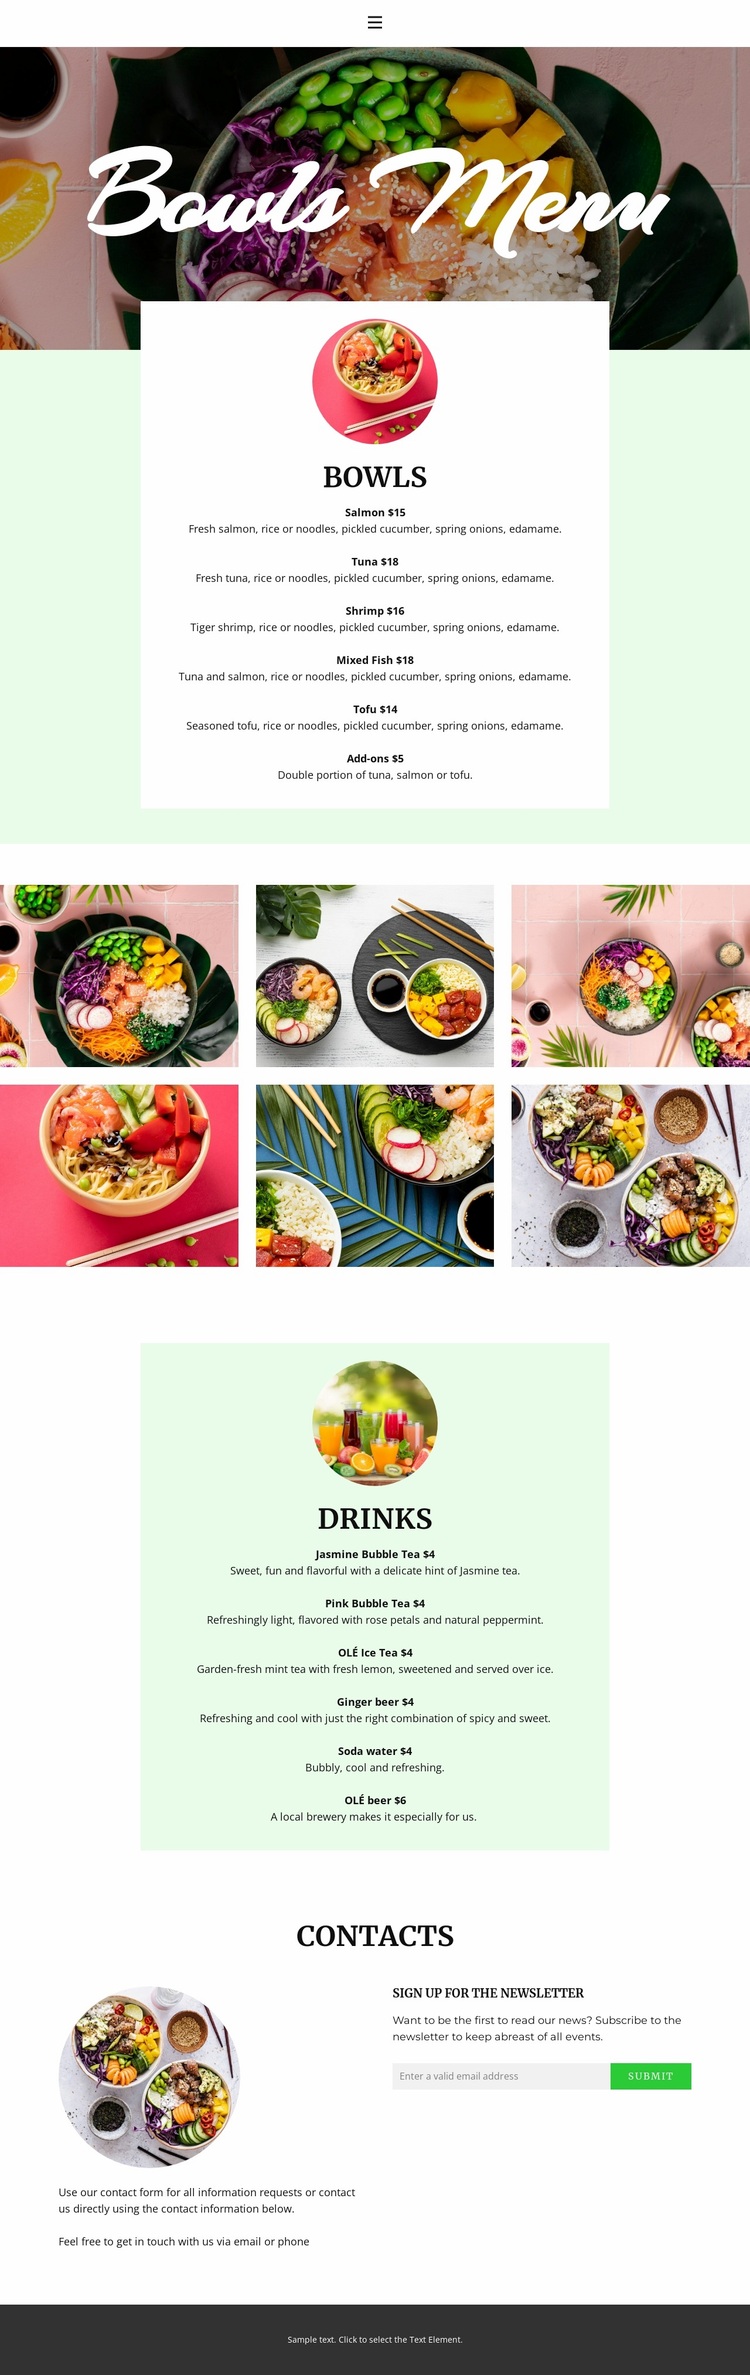 Bowl menu Website Design